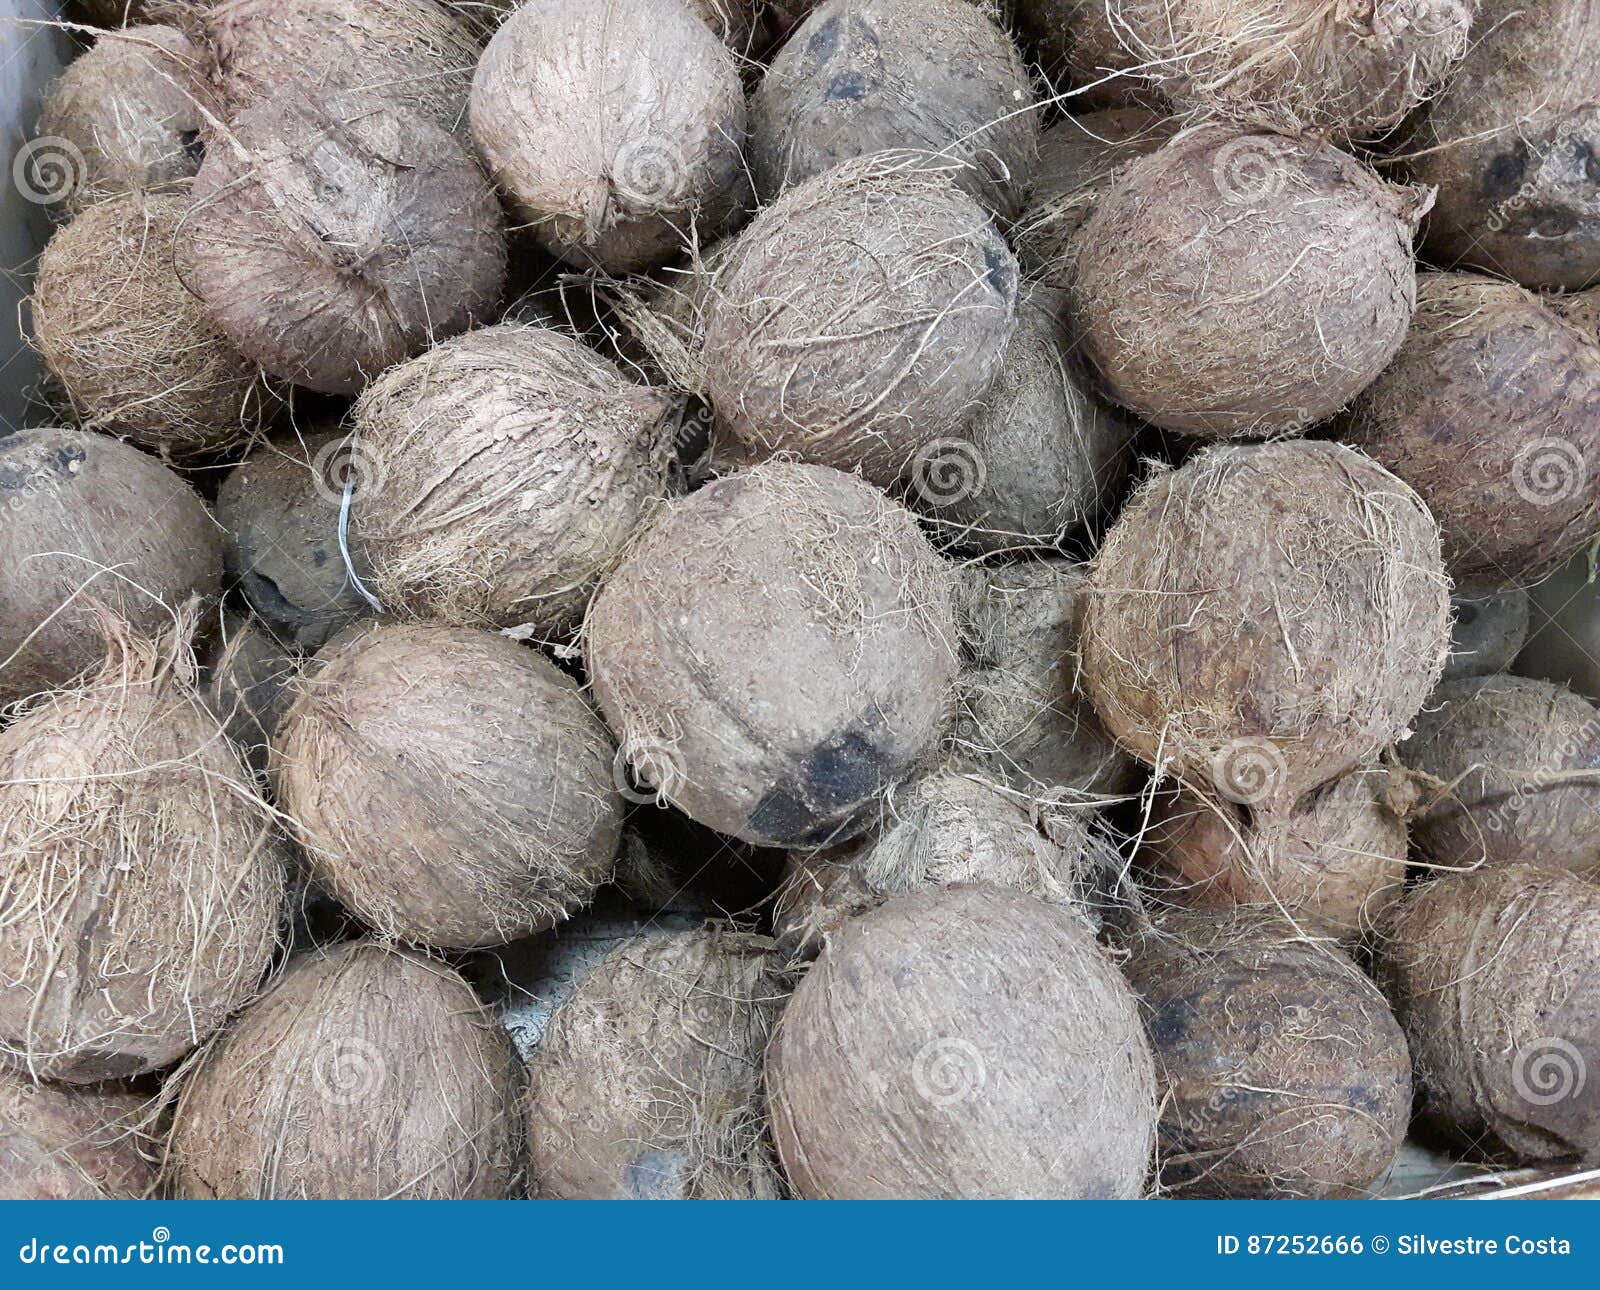 cocos nucifera